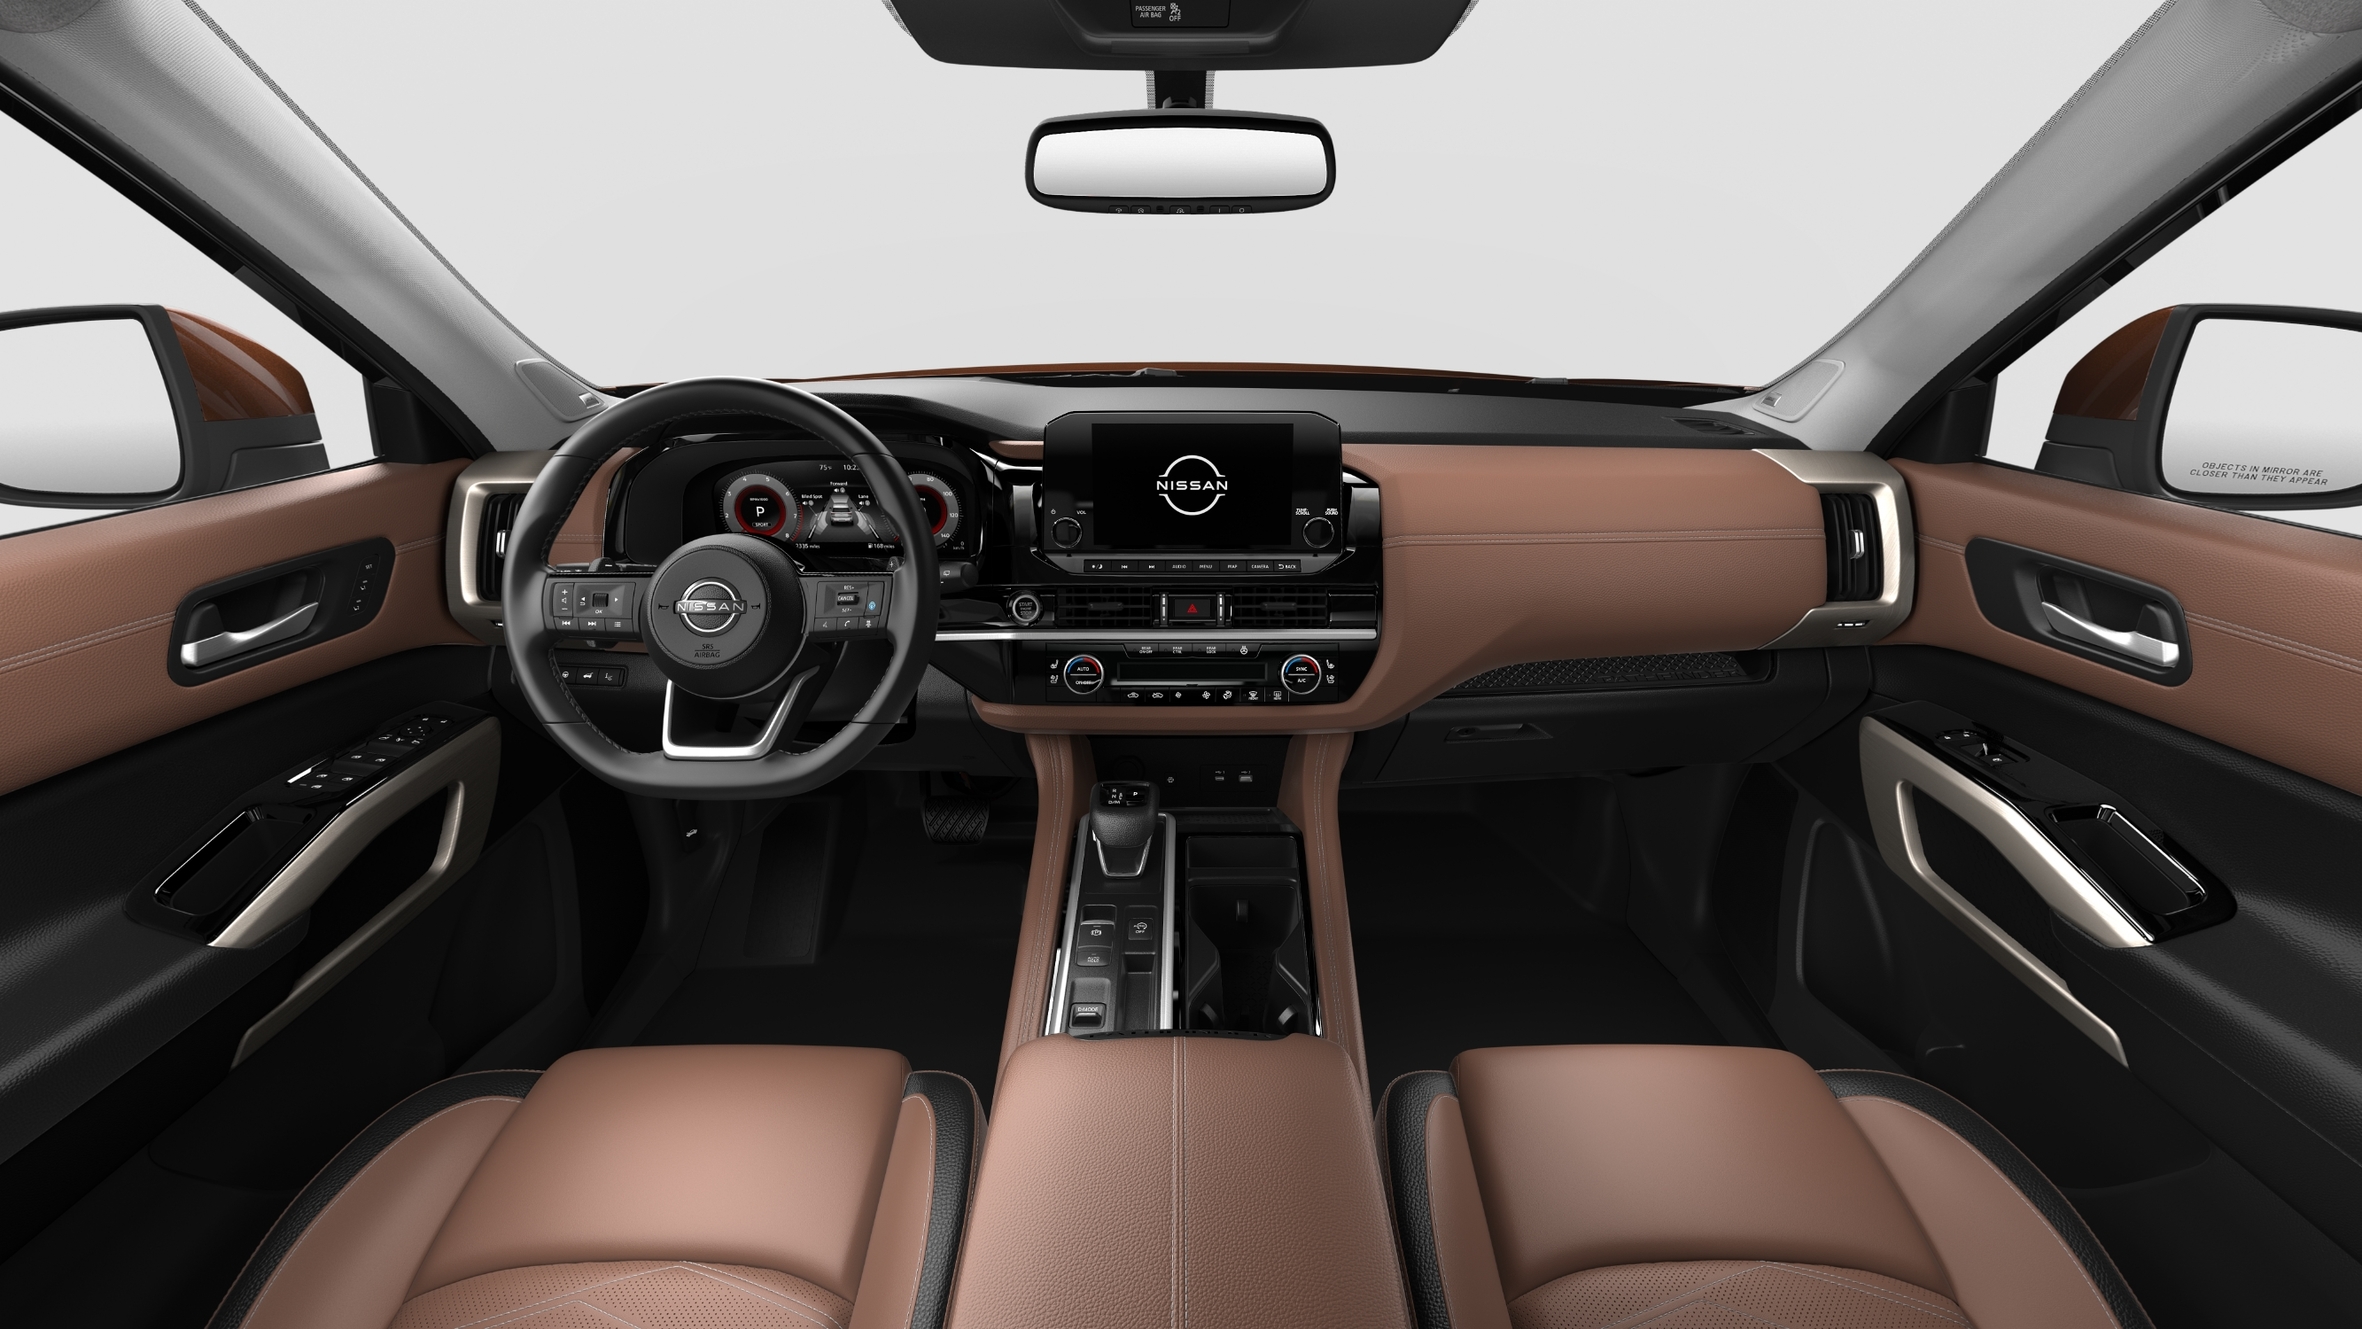 Nissan Pathfinder Steering Wheel